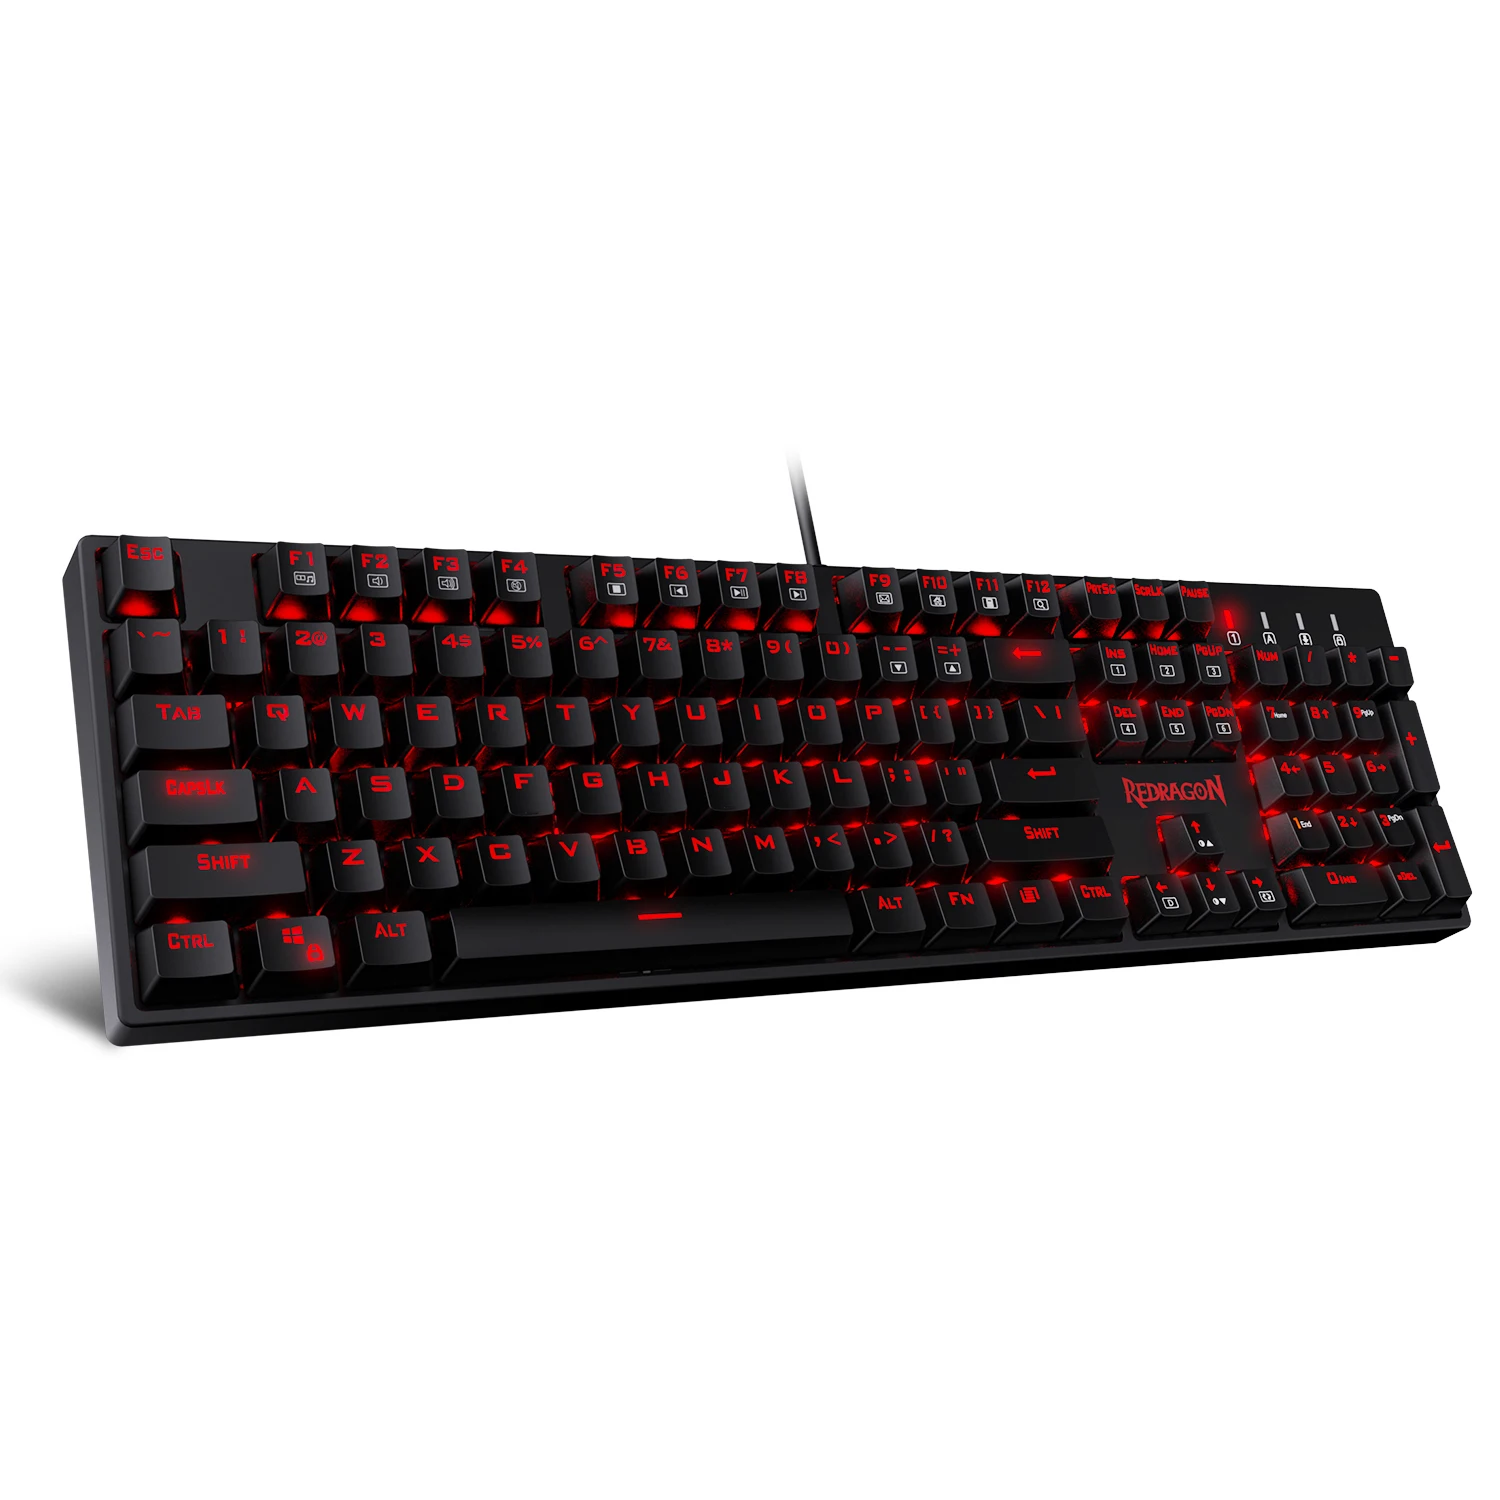 Redragon K582-RED светодиодный Механическая игровая клавиатура, 104 стандартная раскладка n-клавишная роликовая механическая клавиатура с тихие красные переключатели